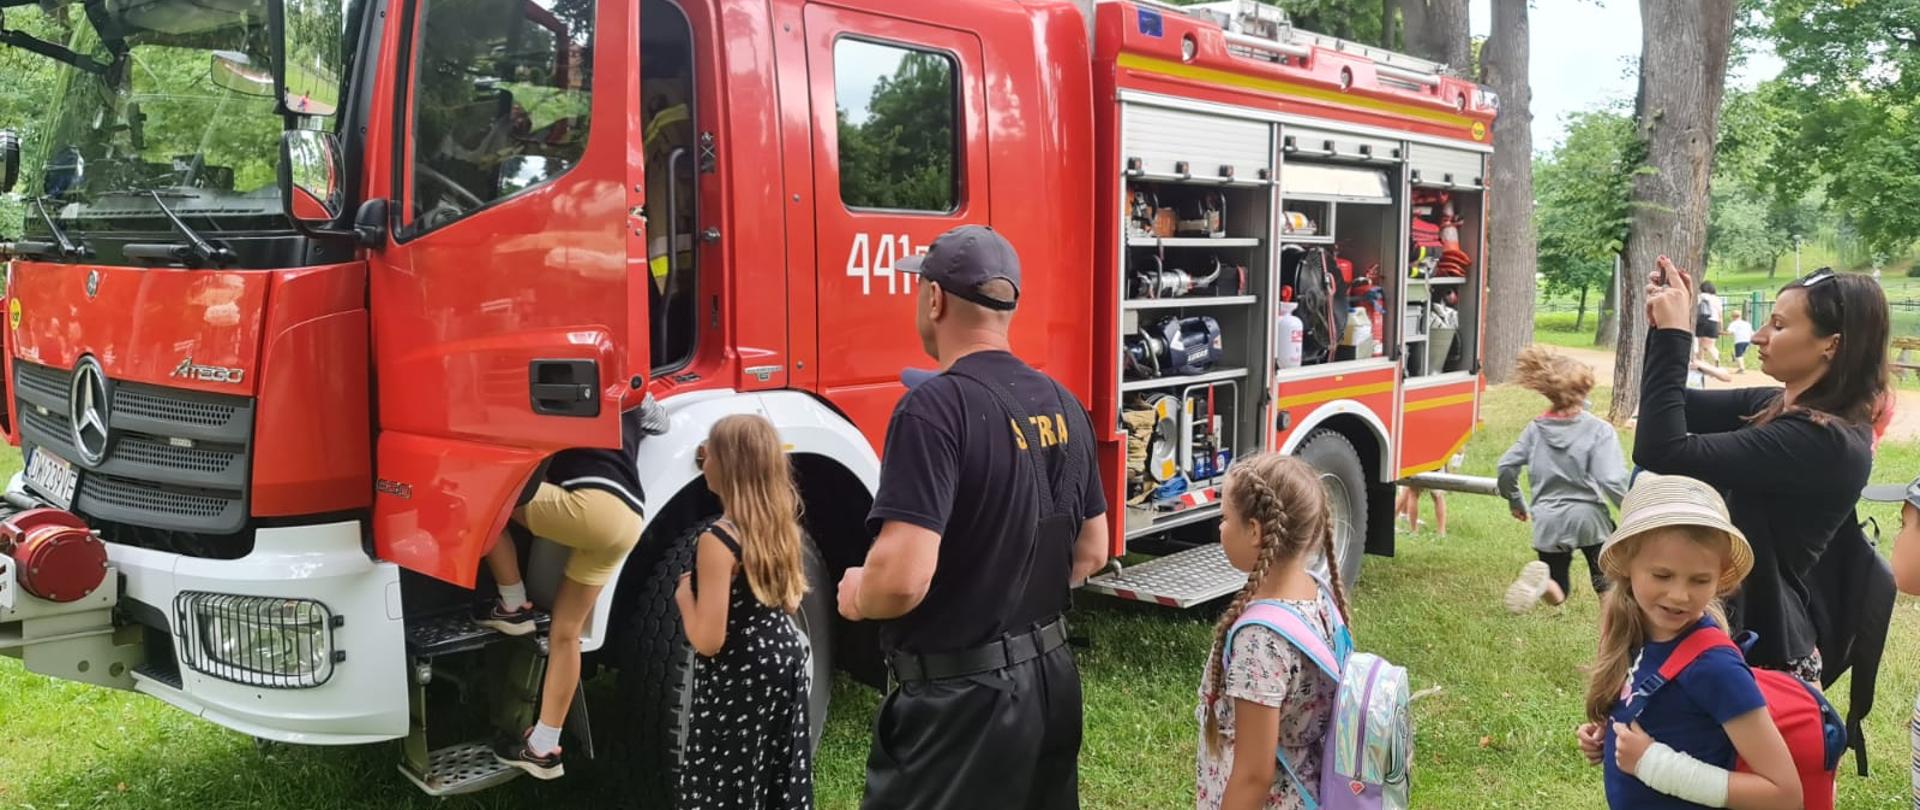 Obraz przedstawia strażaka pokazującego dzieciom samochód pożarniczy